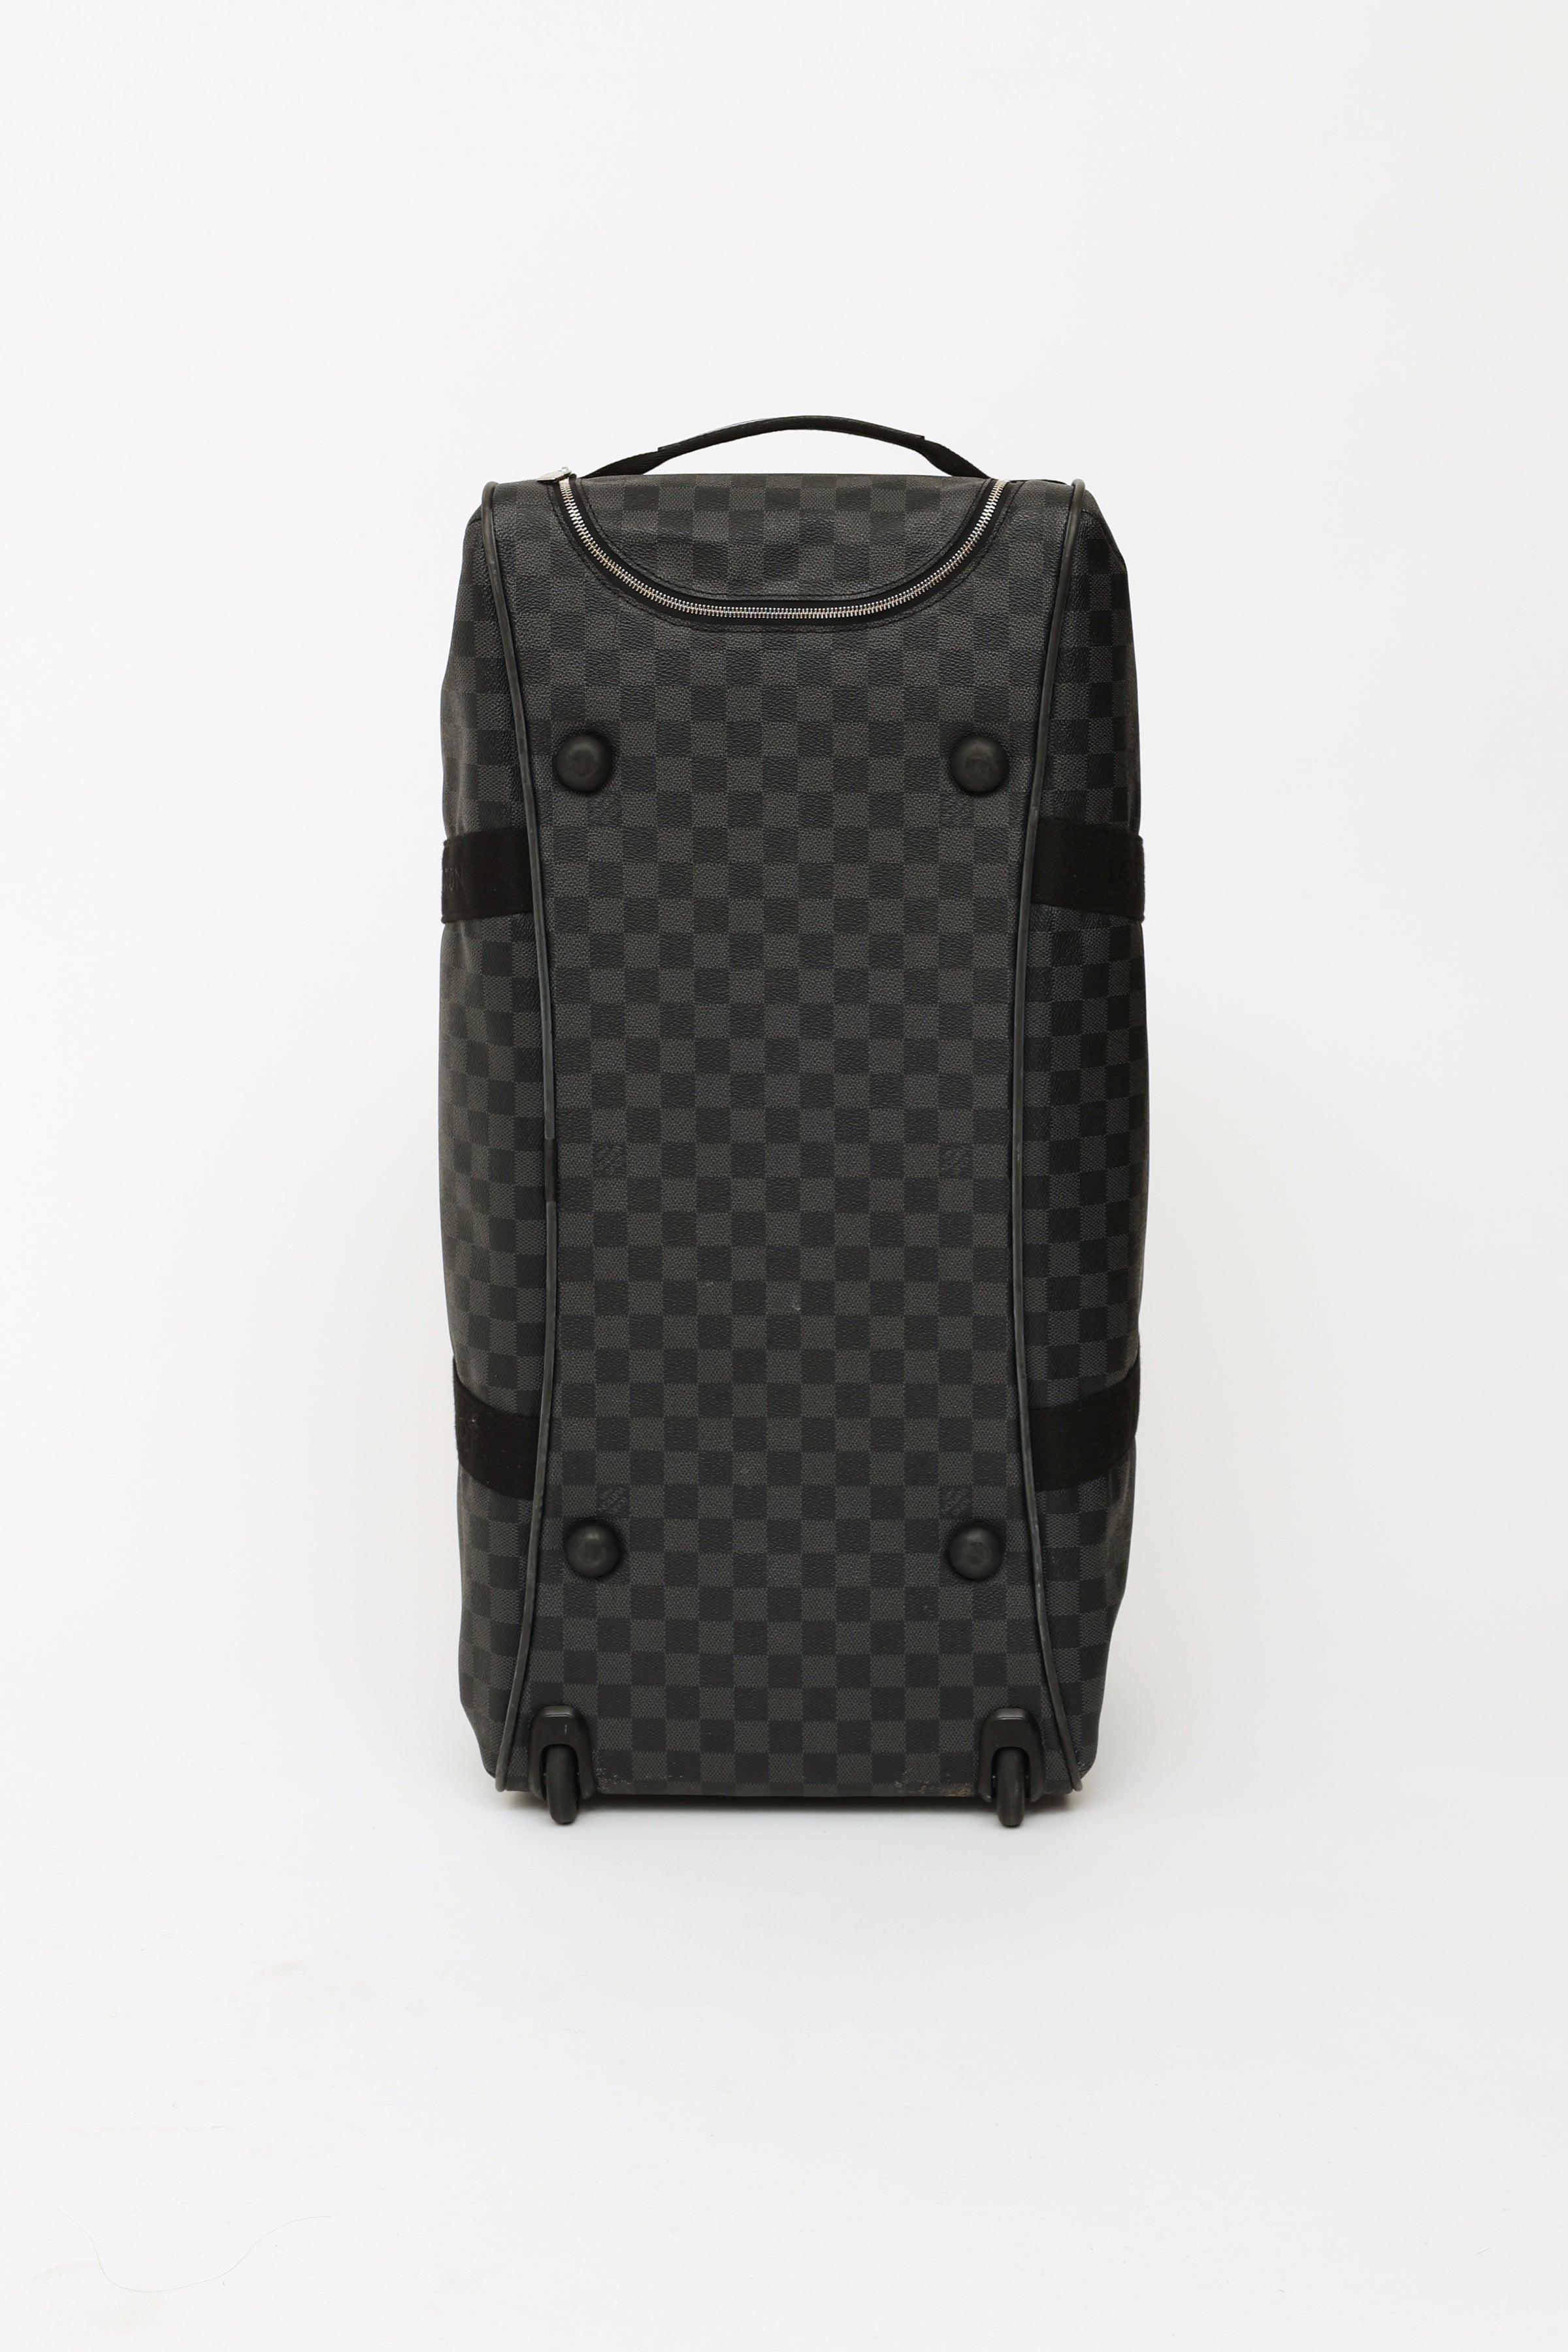 Louis Vuitton Neo Eole Handbag Damier Graphite 65 Auction